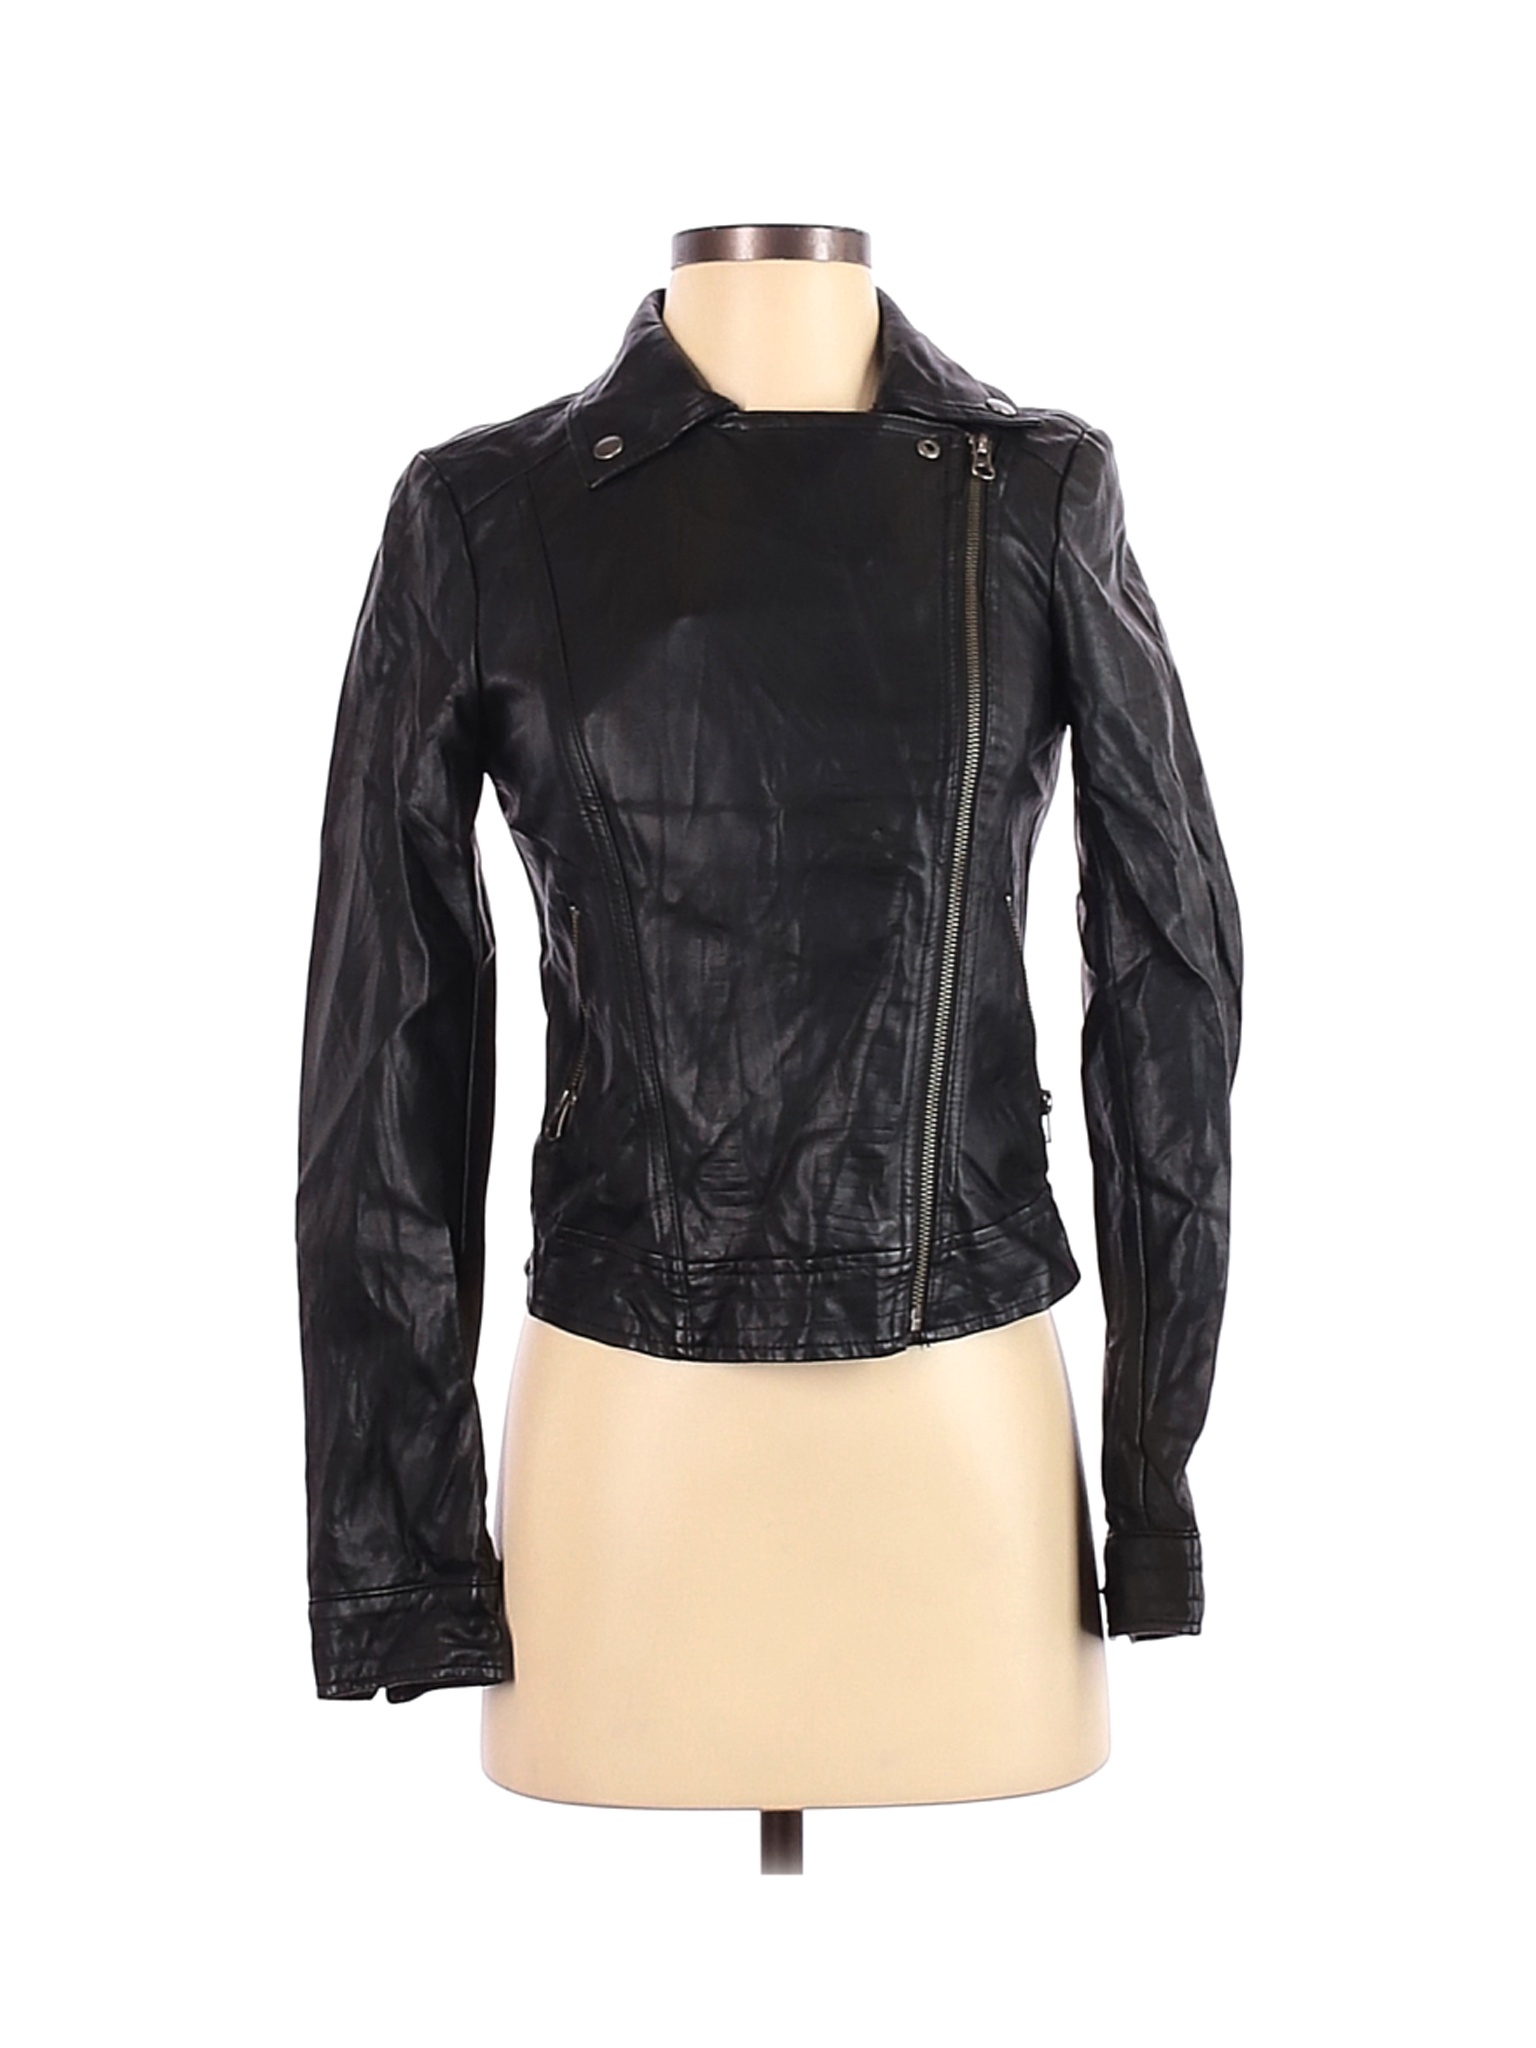 Rock & Republic Women Black Faux Leather Jacket XS | eBay